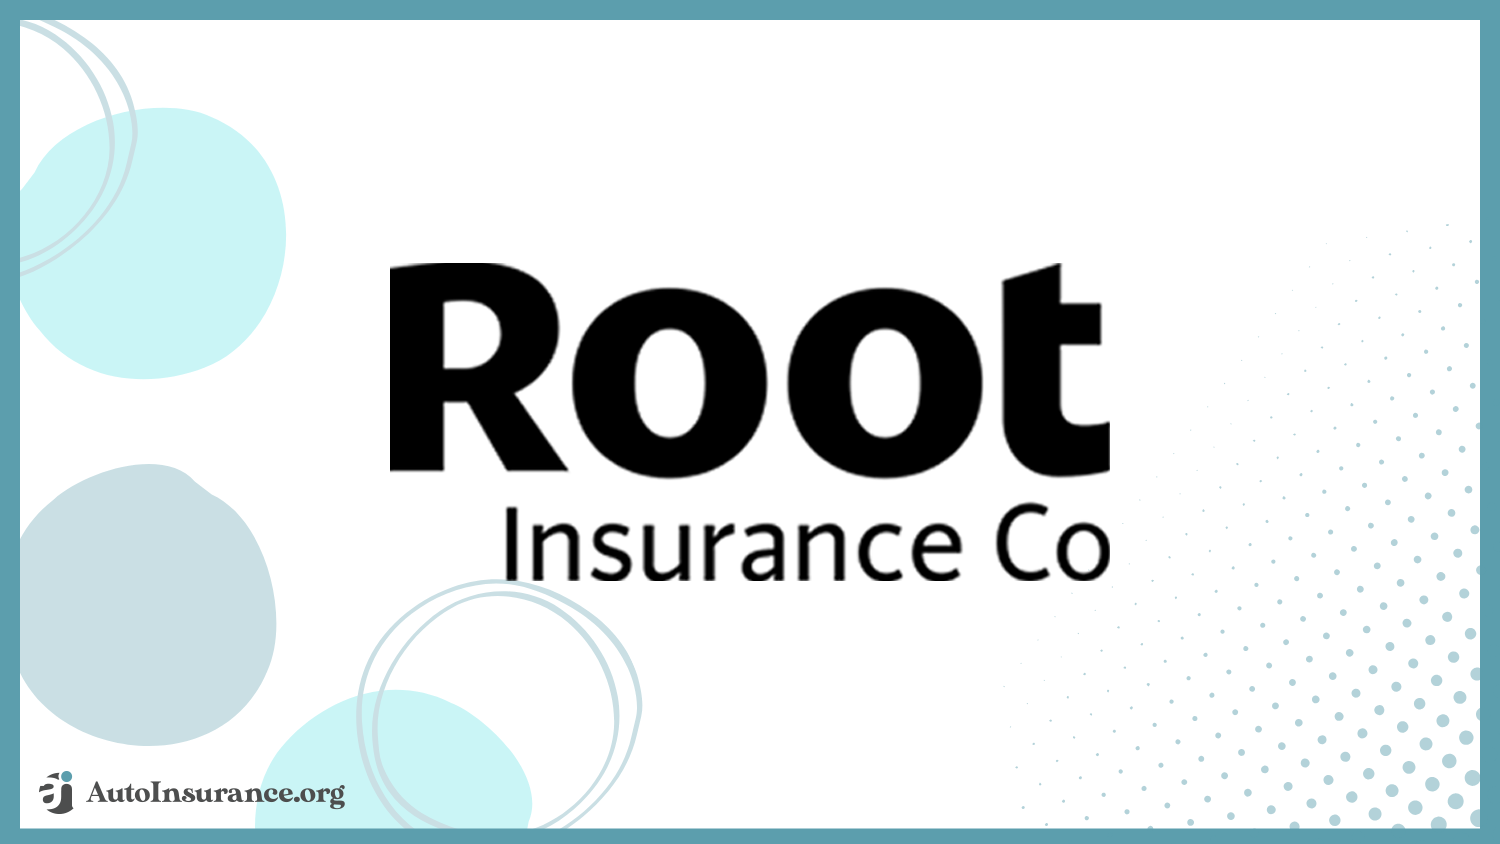 Root insurance company